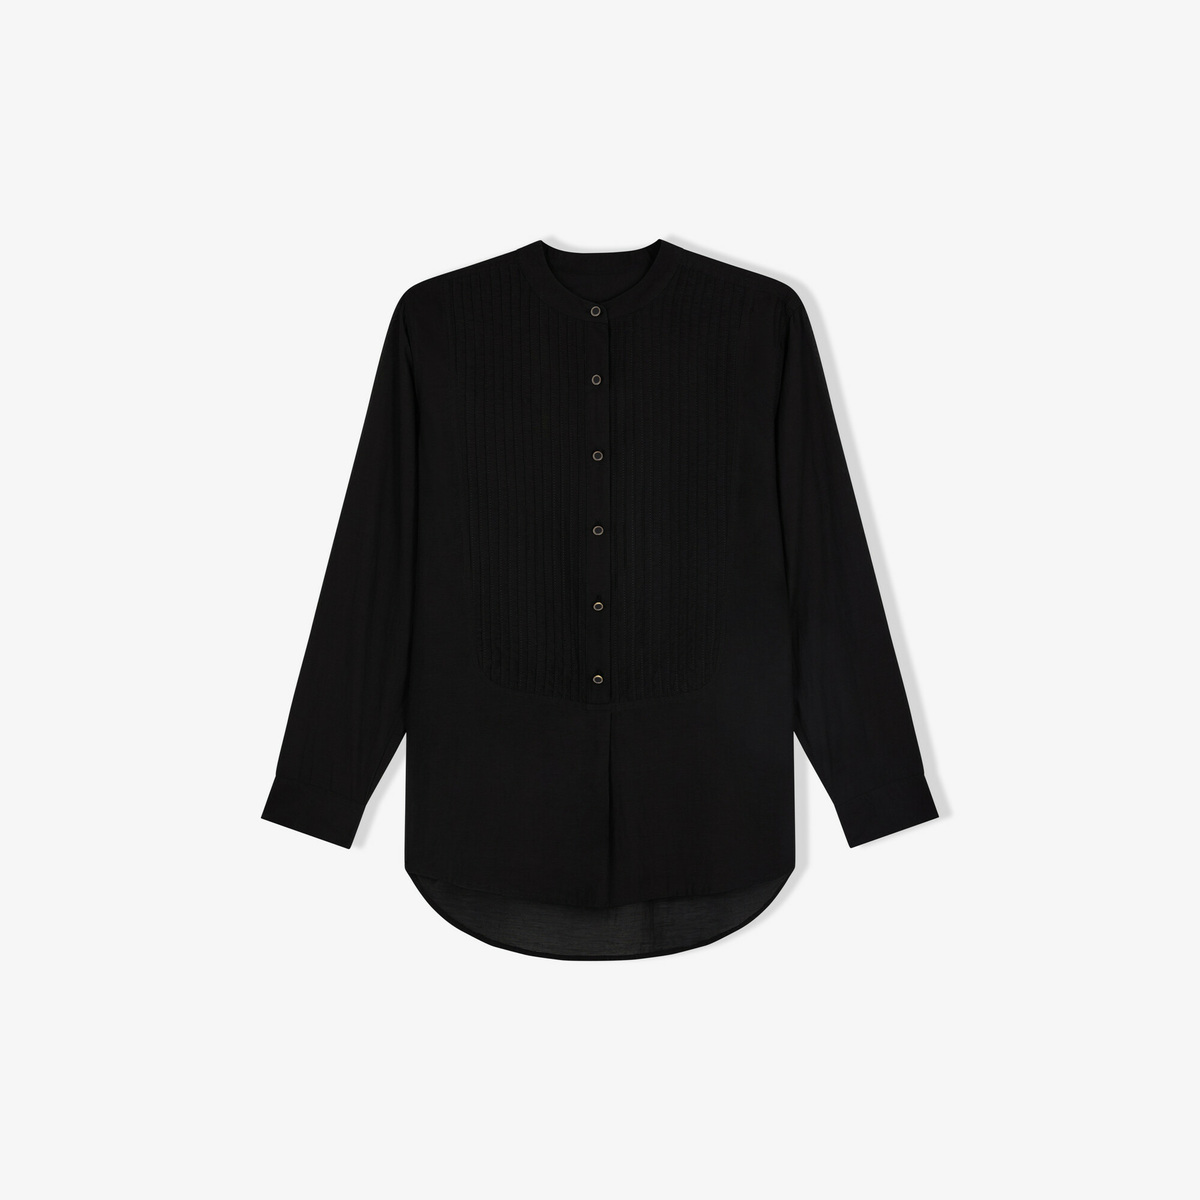 Ellea bib blouse, Black - Lightweight cotton voile - image 1